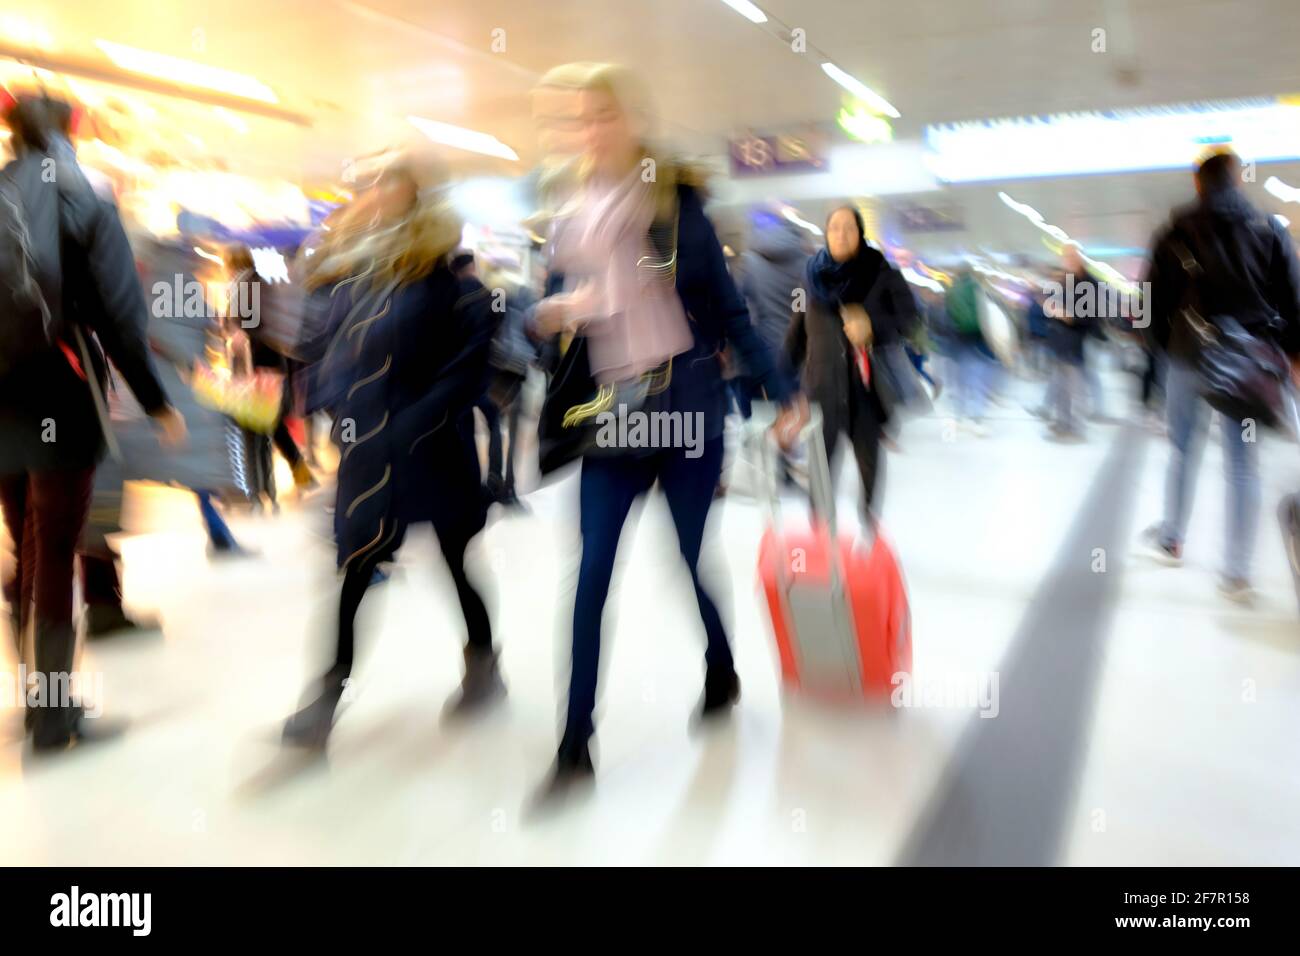 19.01.2019, Duesseldorf, Nordrhein-Westfalen, Deutschland - Menschen im Duesseldorfer Hauptbahnhof Foto Stock